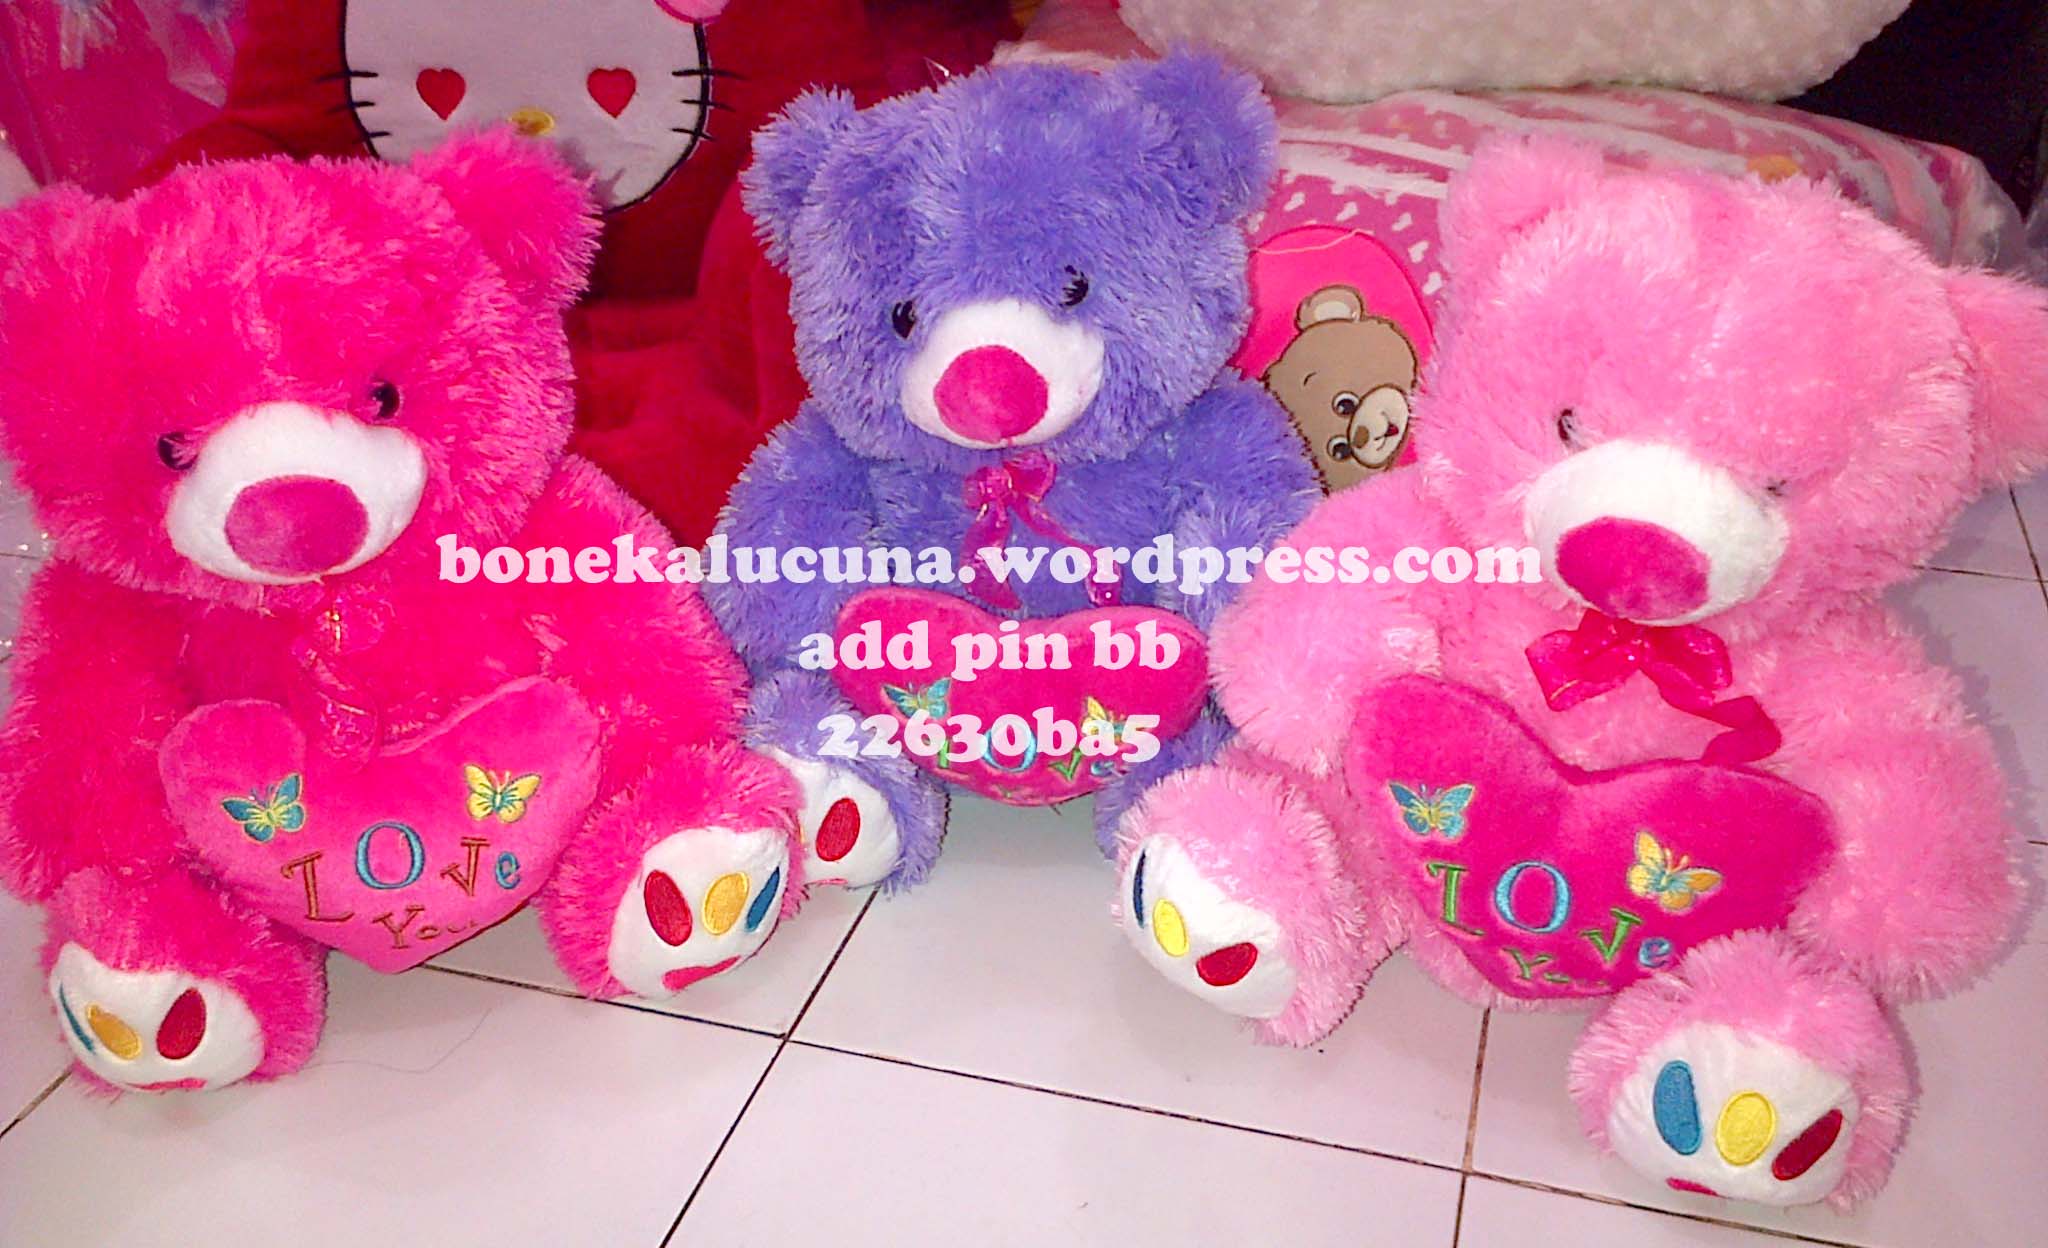 Boneka Beruang Love Boneka Lucu Toko Boneka Online Jual